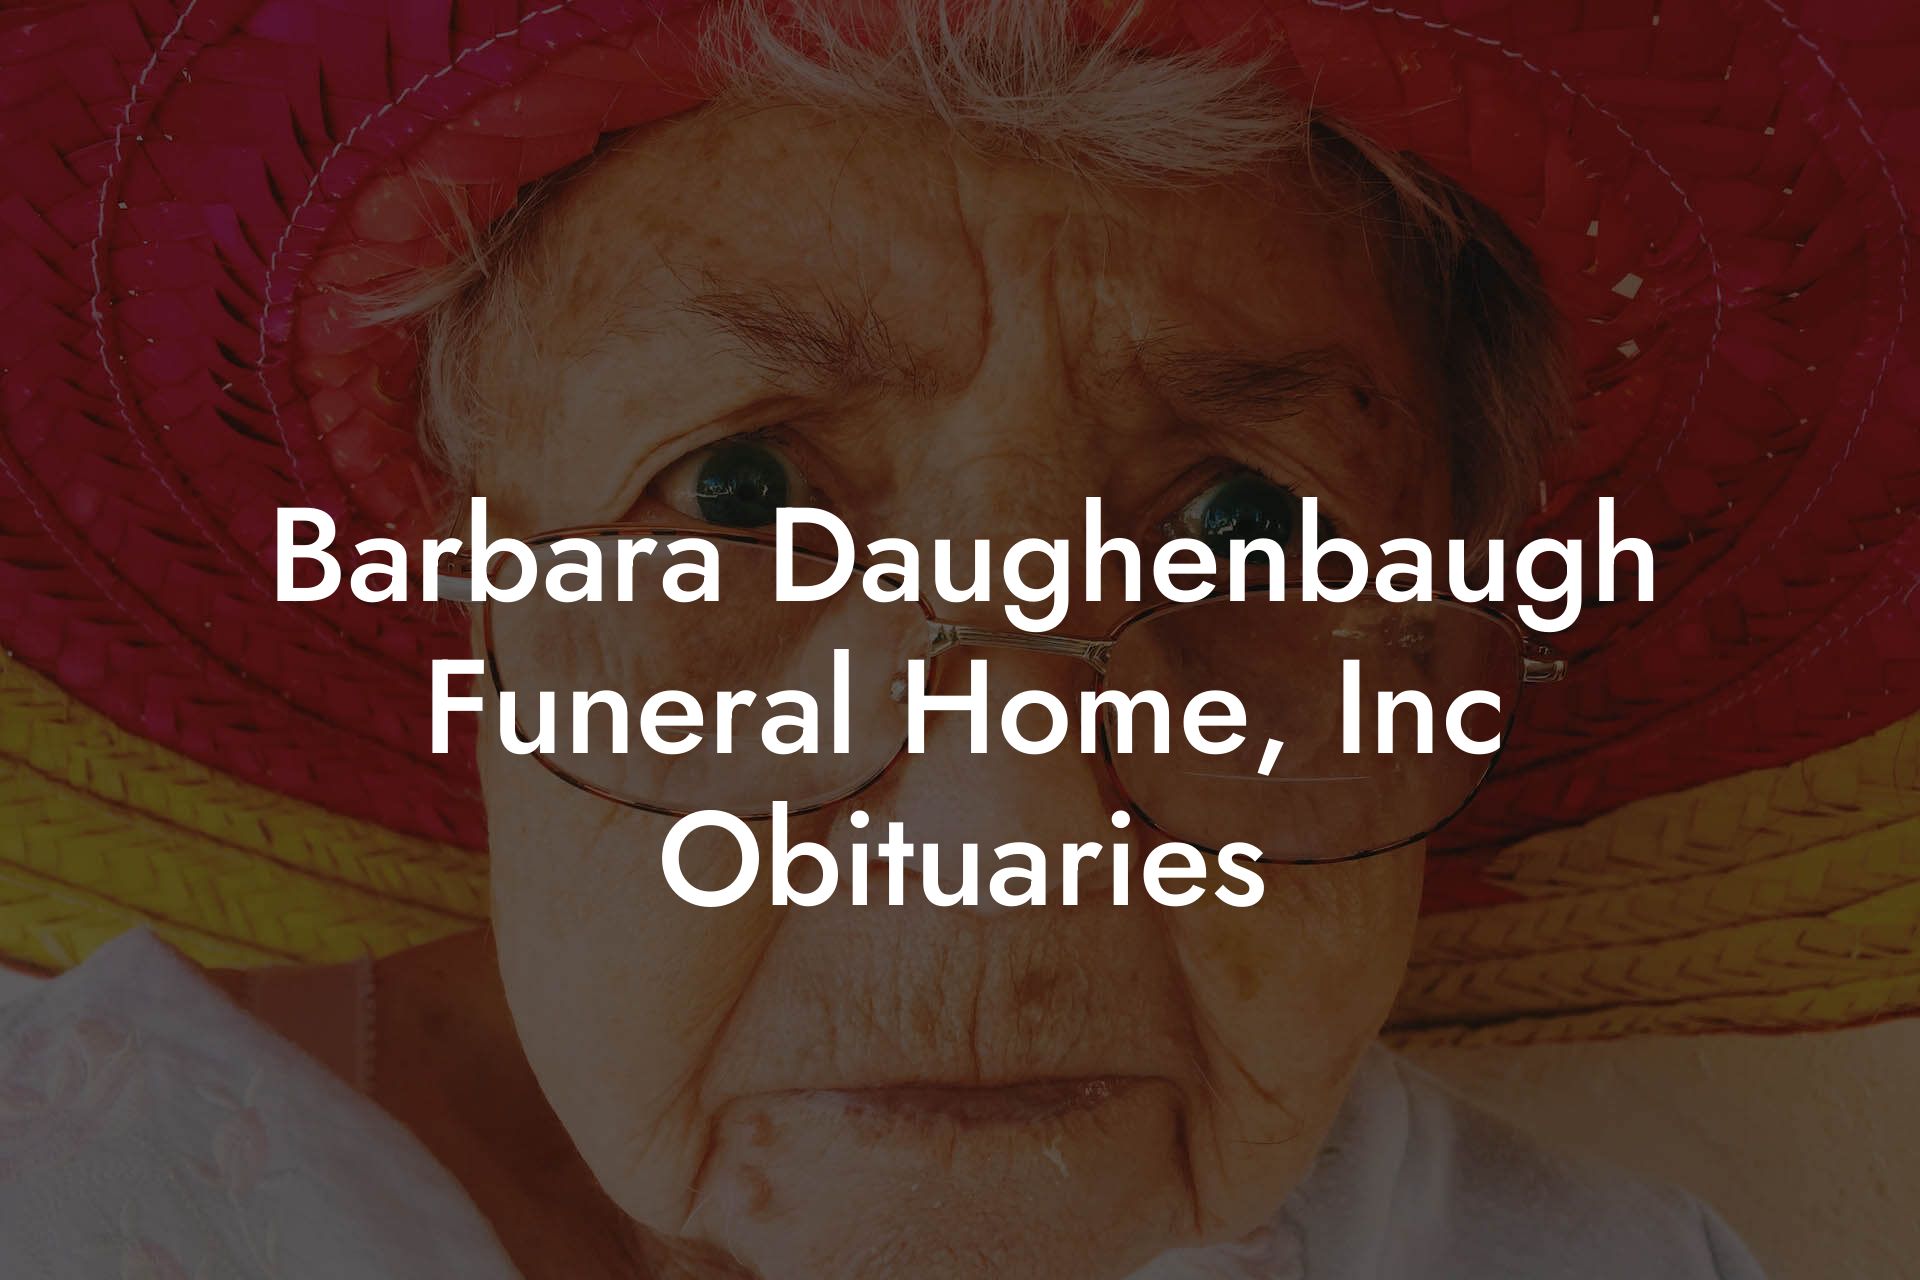 Barbara Daughenbaugh Funeral Home, Inc Obituaries